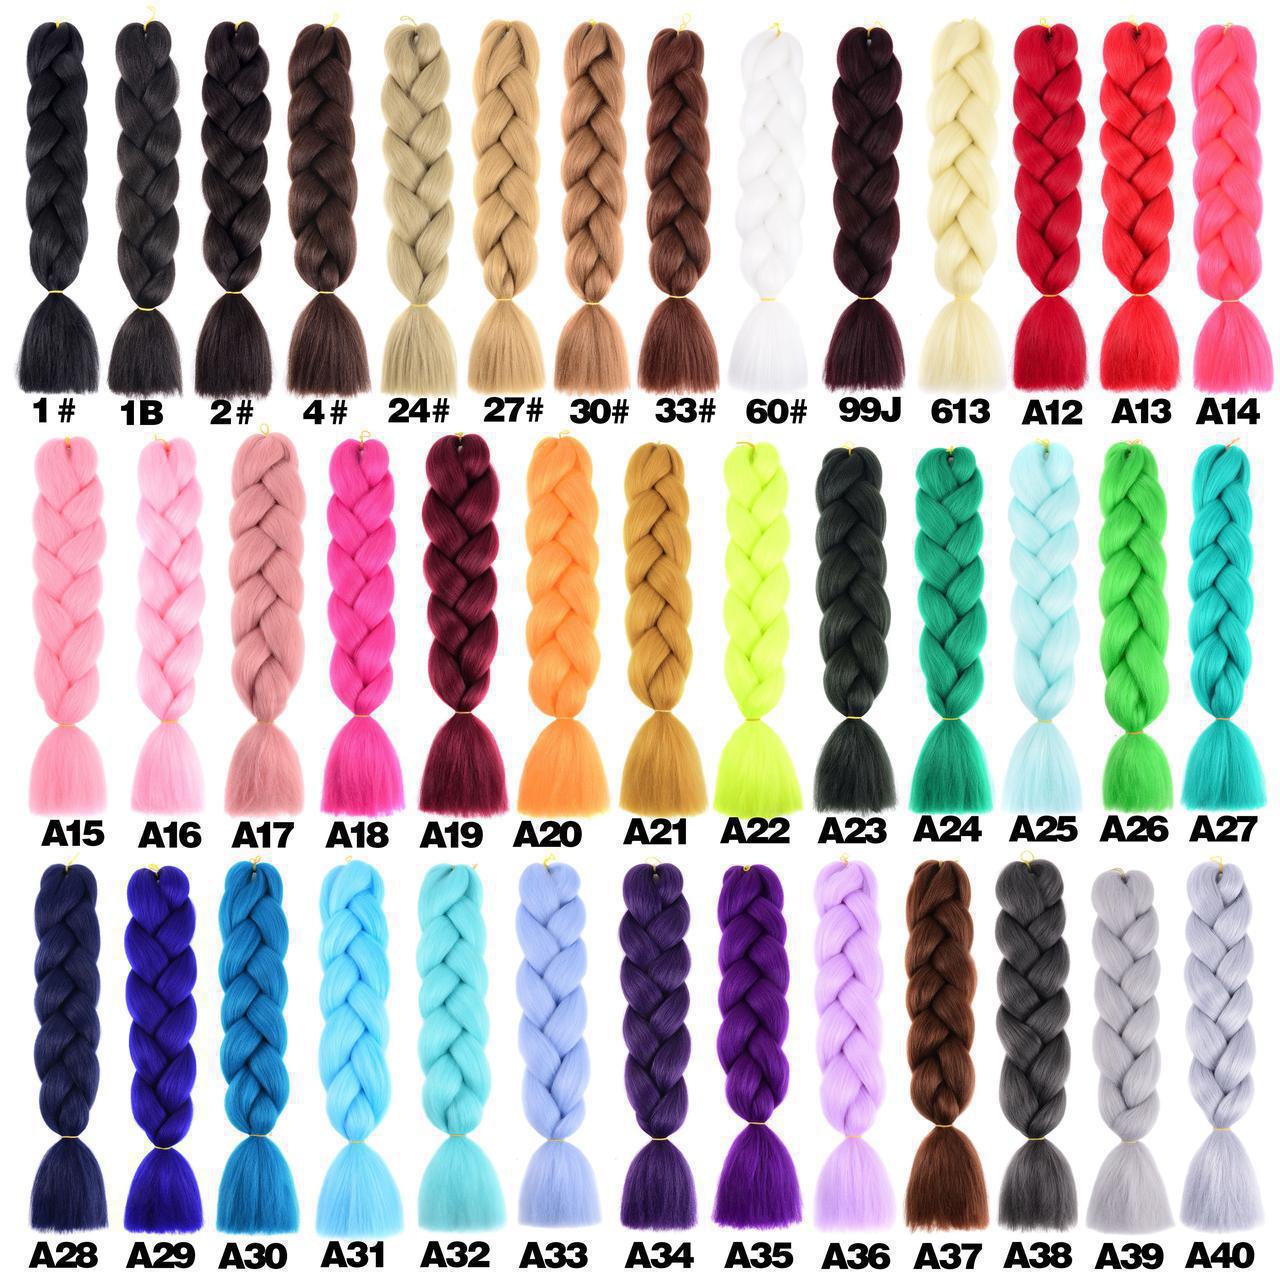 Канекалон однотонний плетіння коси палітра 40 кольорів. Довжина коси 60 см. Термостійкий.